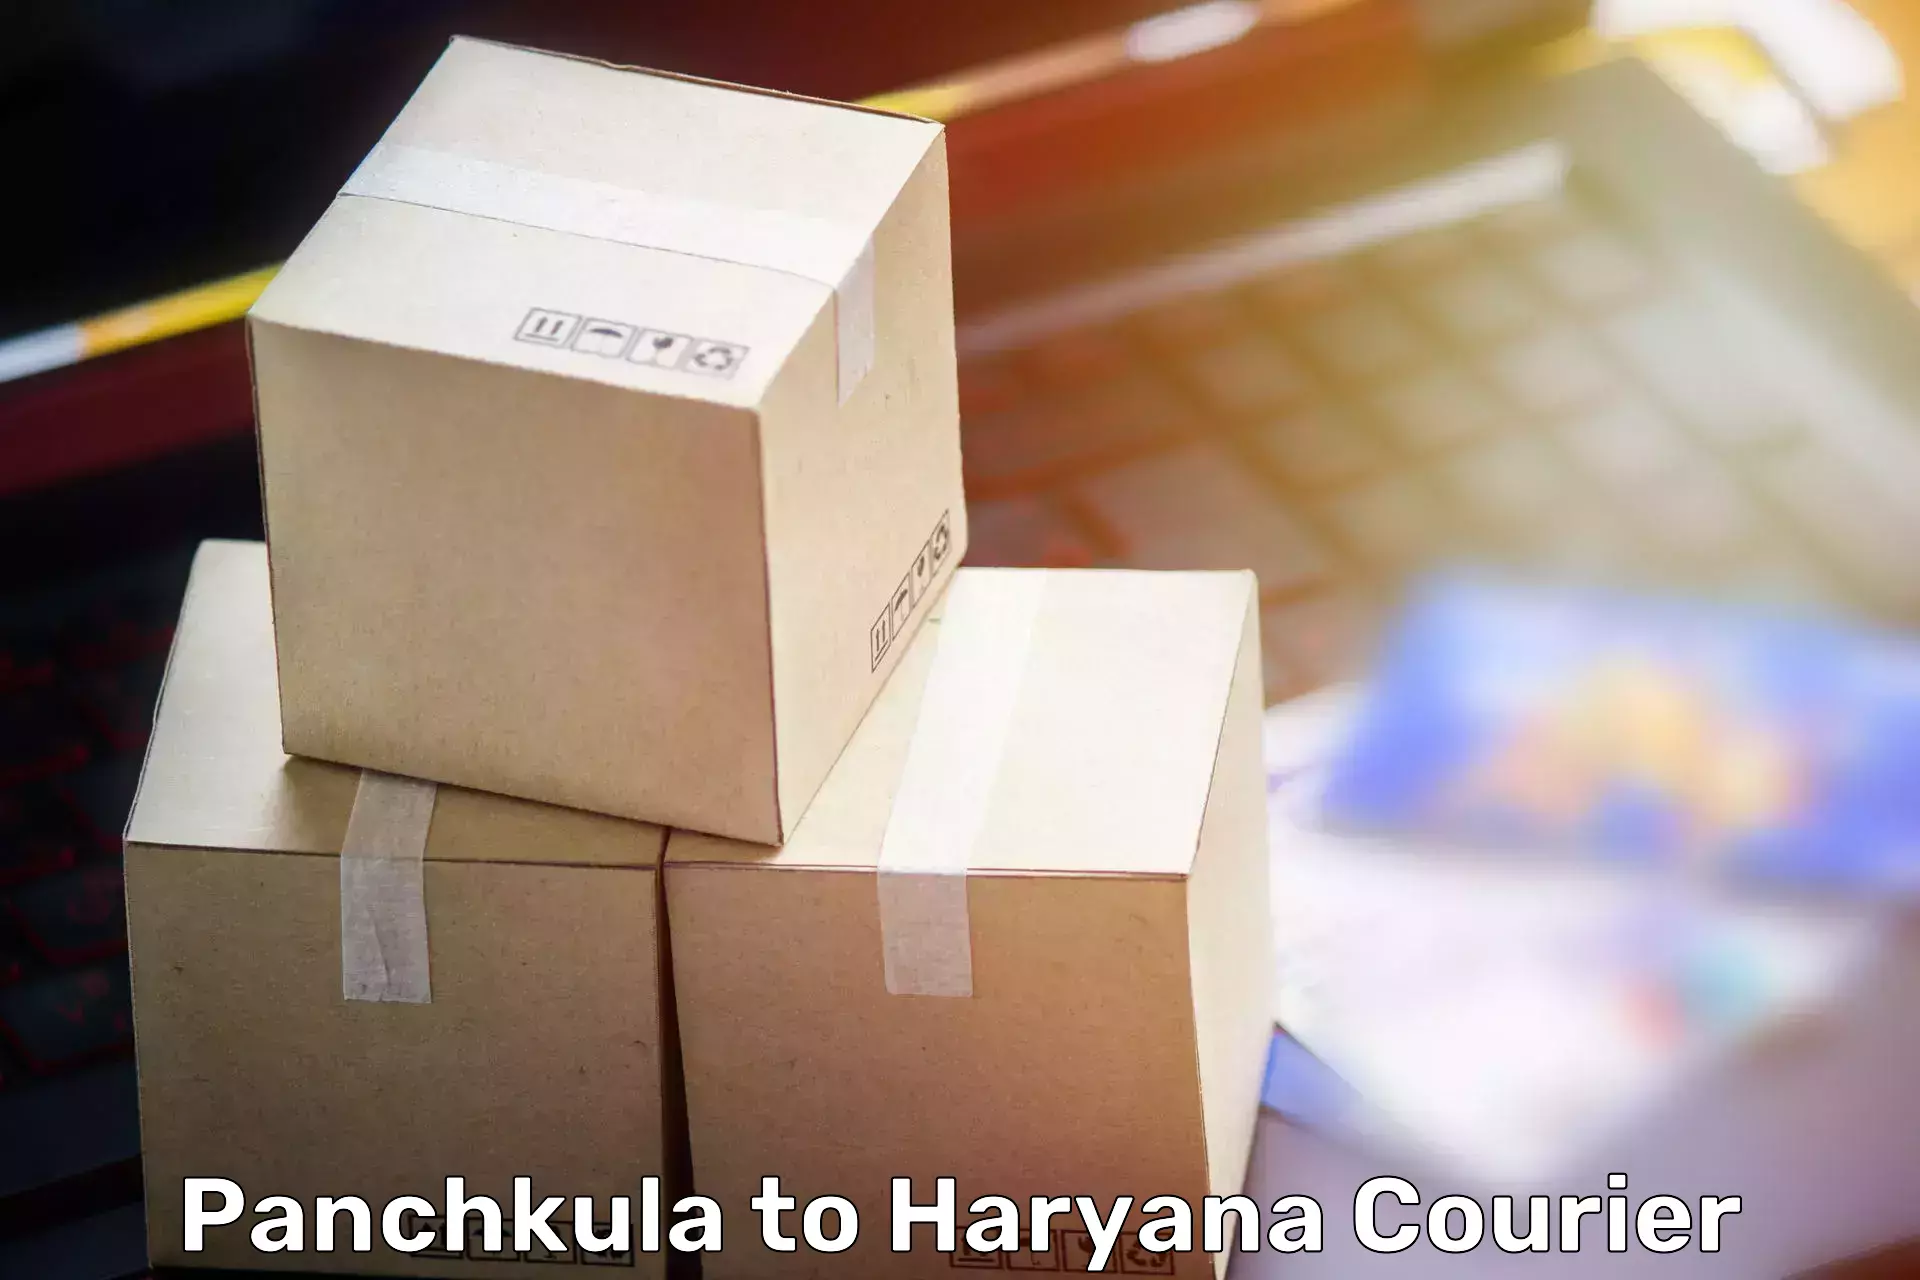 Furniture moving experts Panchkula to Jind